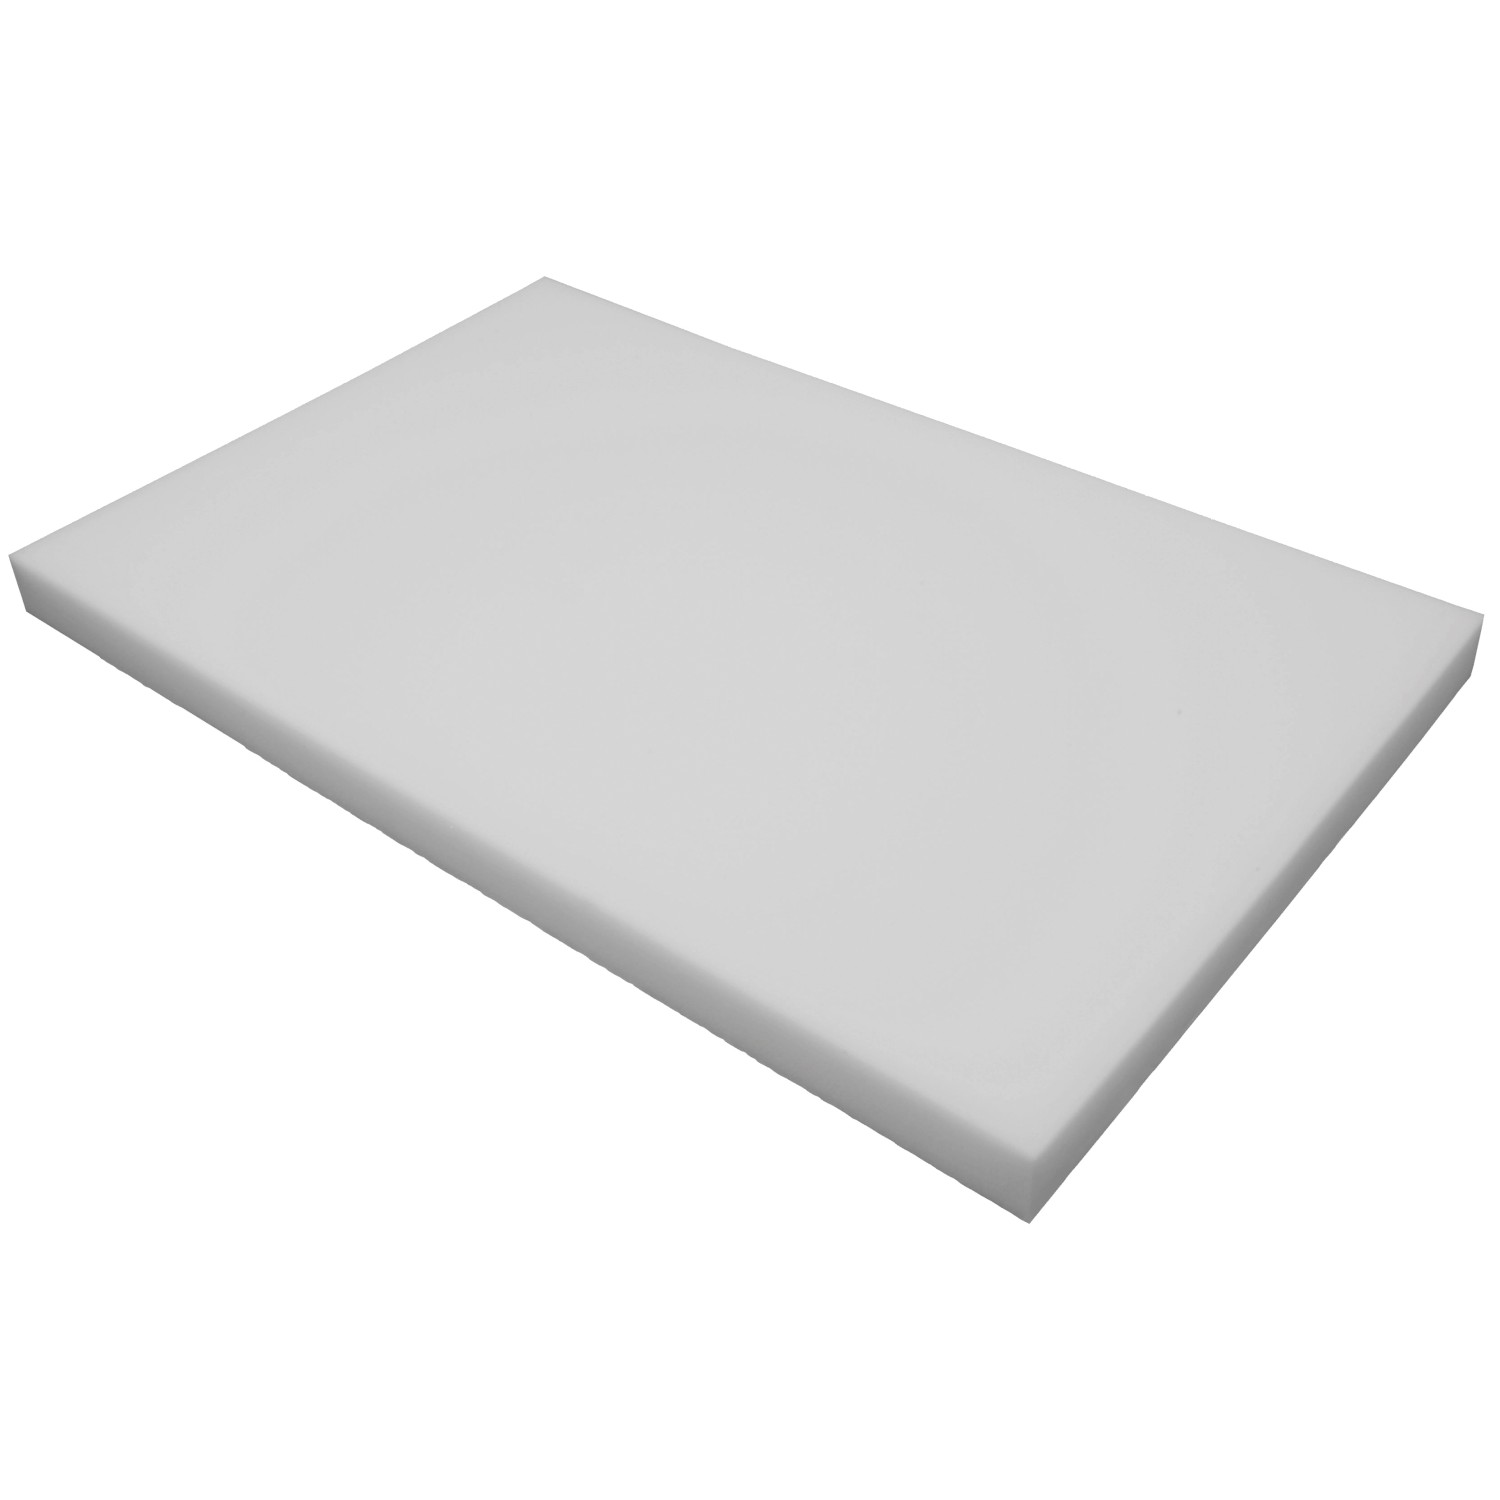 Schaumstoff Auflage Polstermaterial RG 40 Schaumgummi Platten ab 1cm